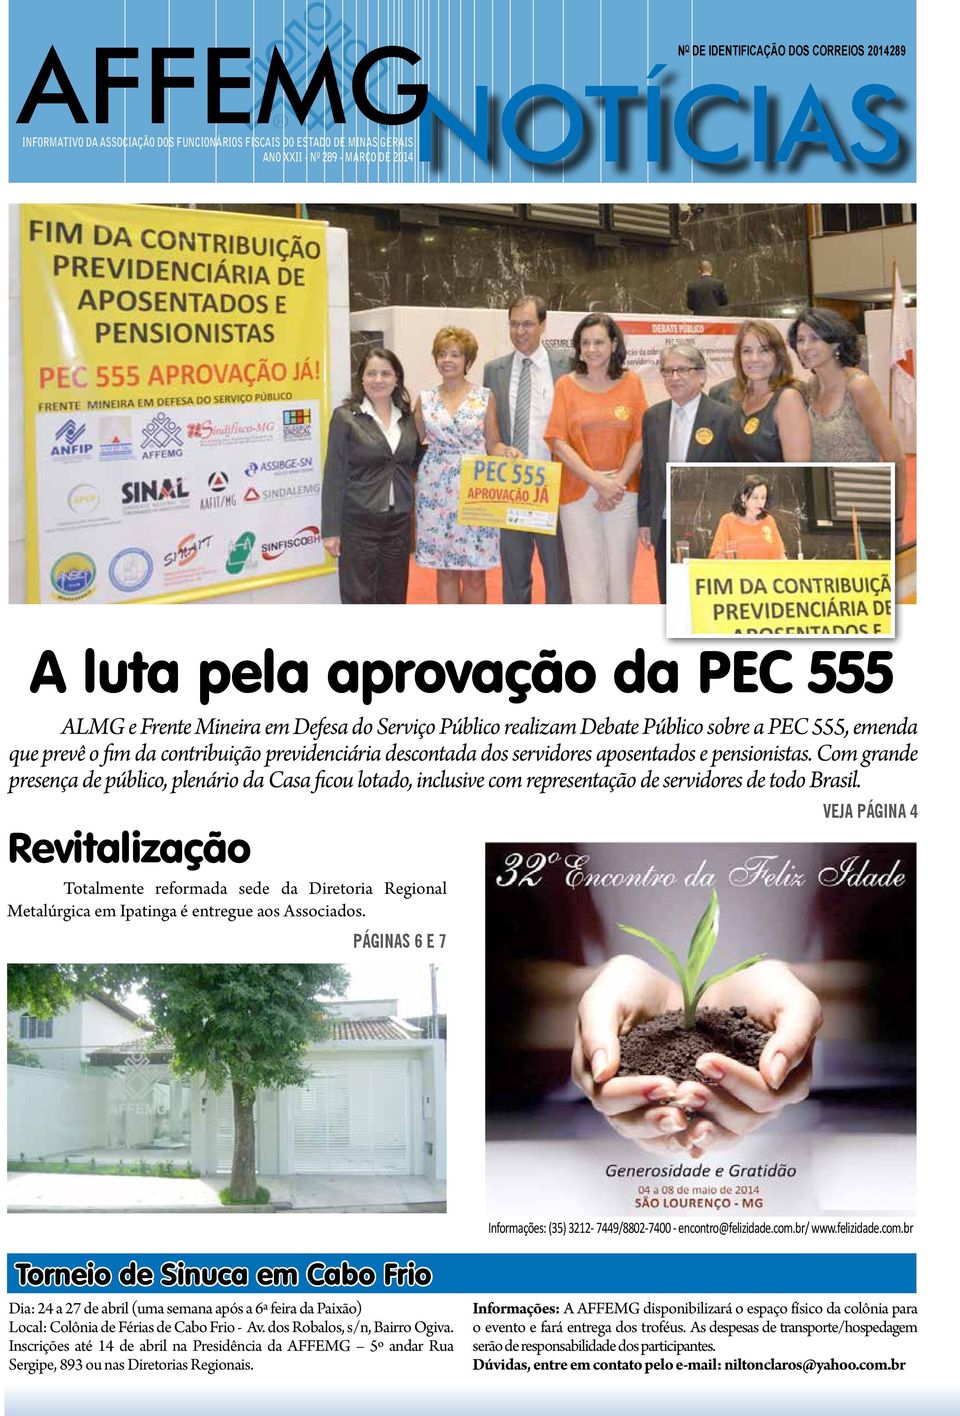 pensionistas. Com grande presença de público, plenário da Casa ficou lotado, inclusive com representação de servidores de todo Brasil.